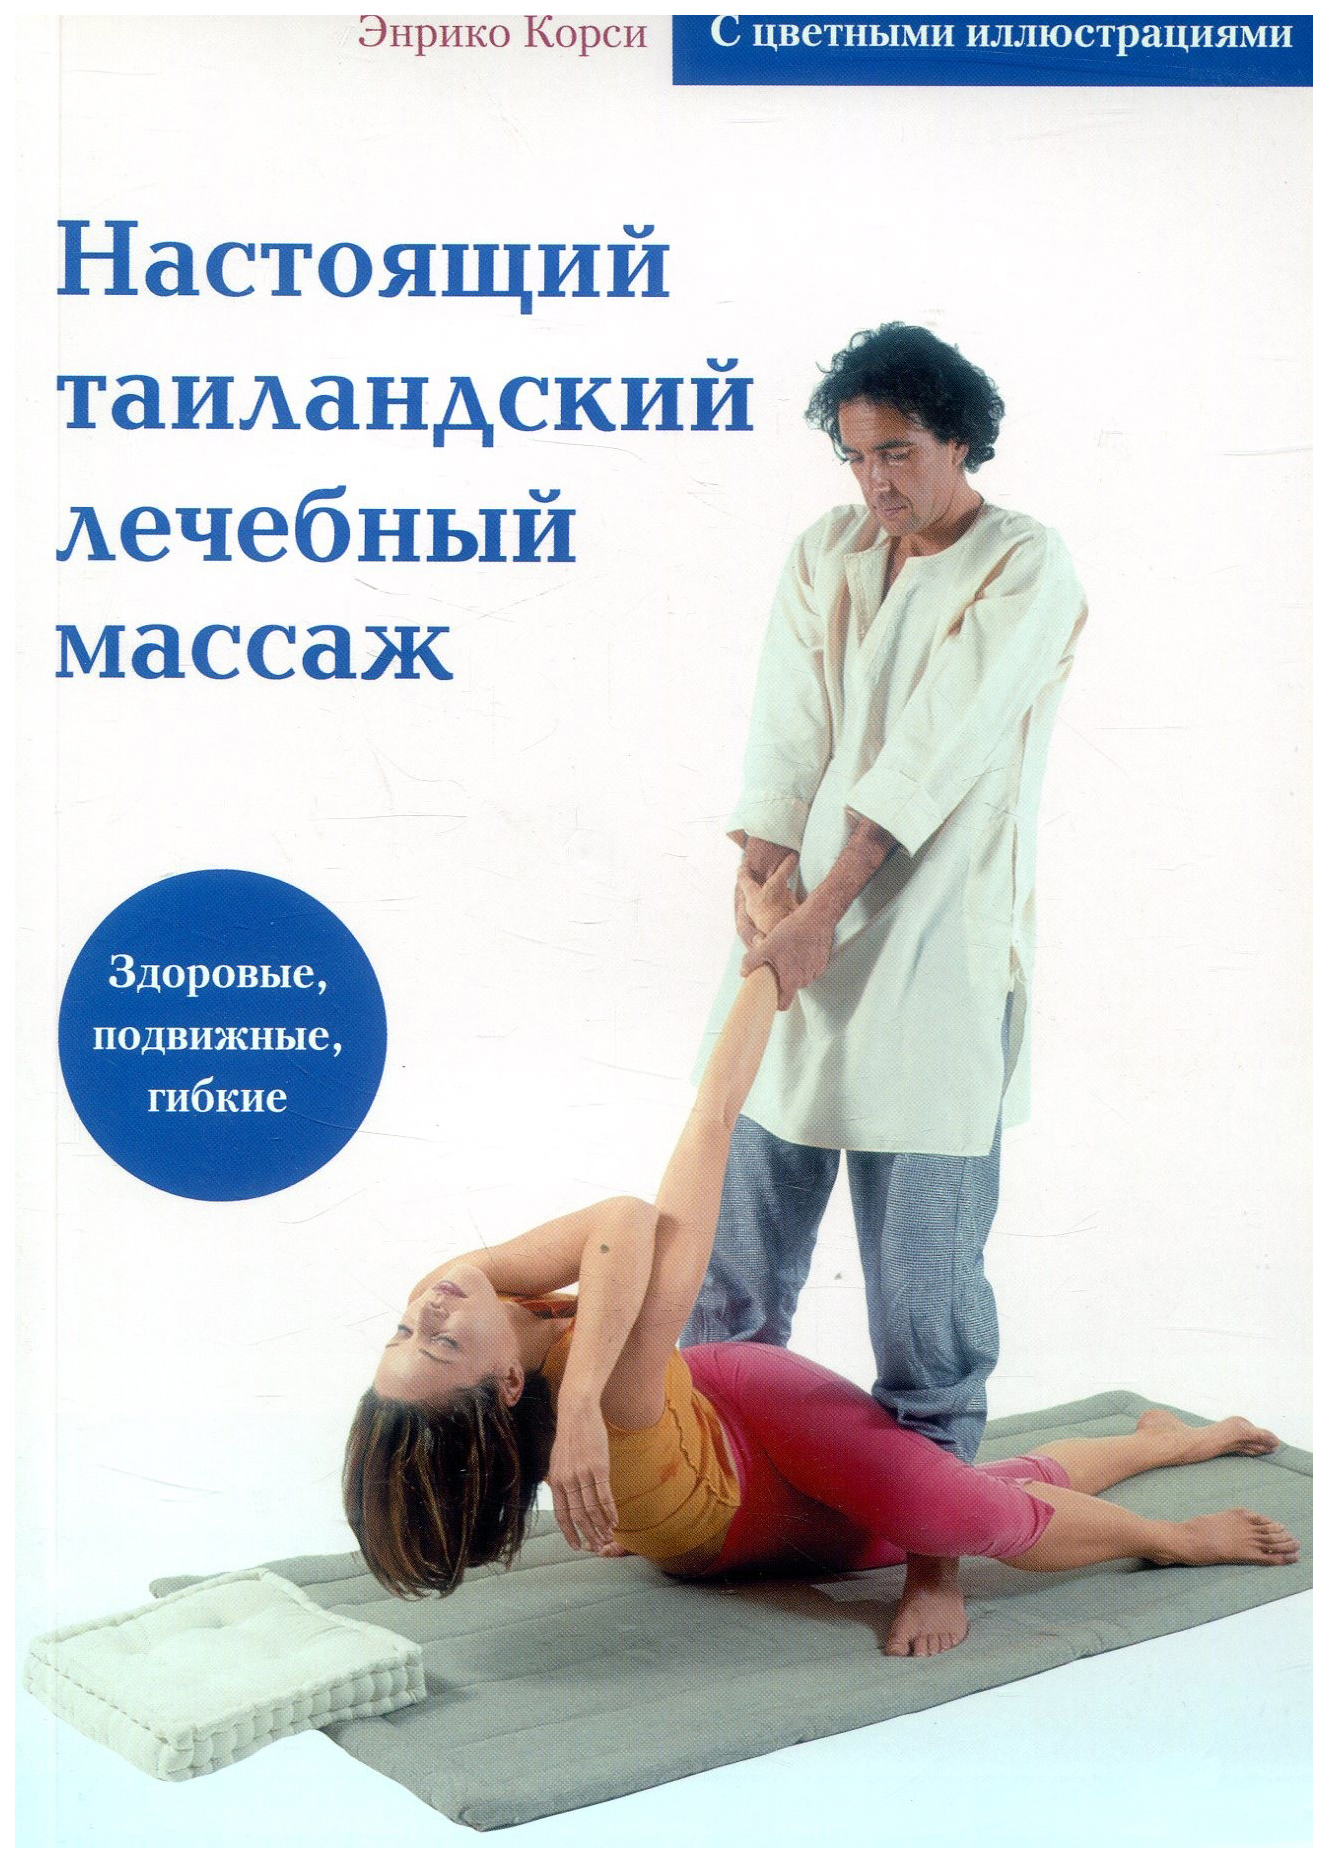 фото Книга настоящий таиландский лечебный массаж диля